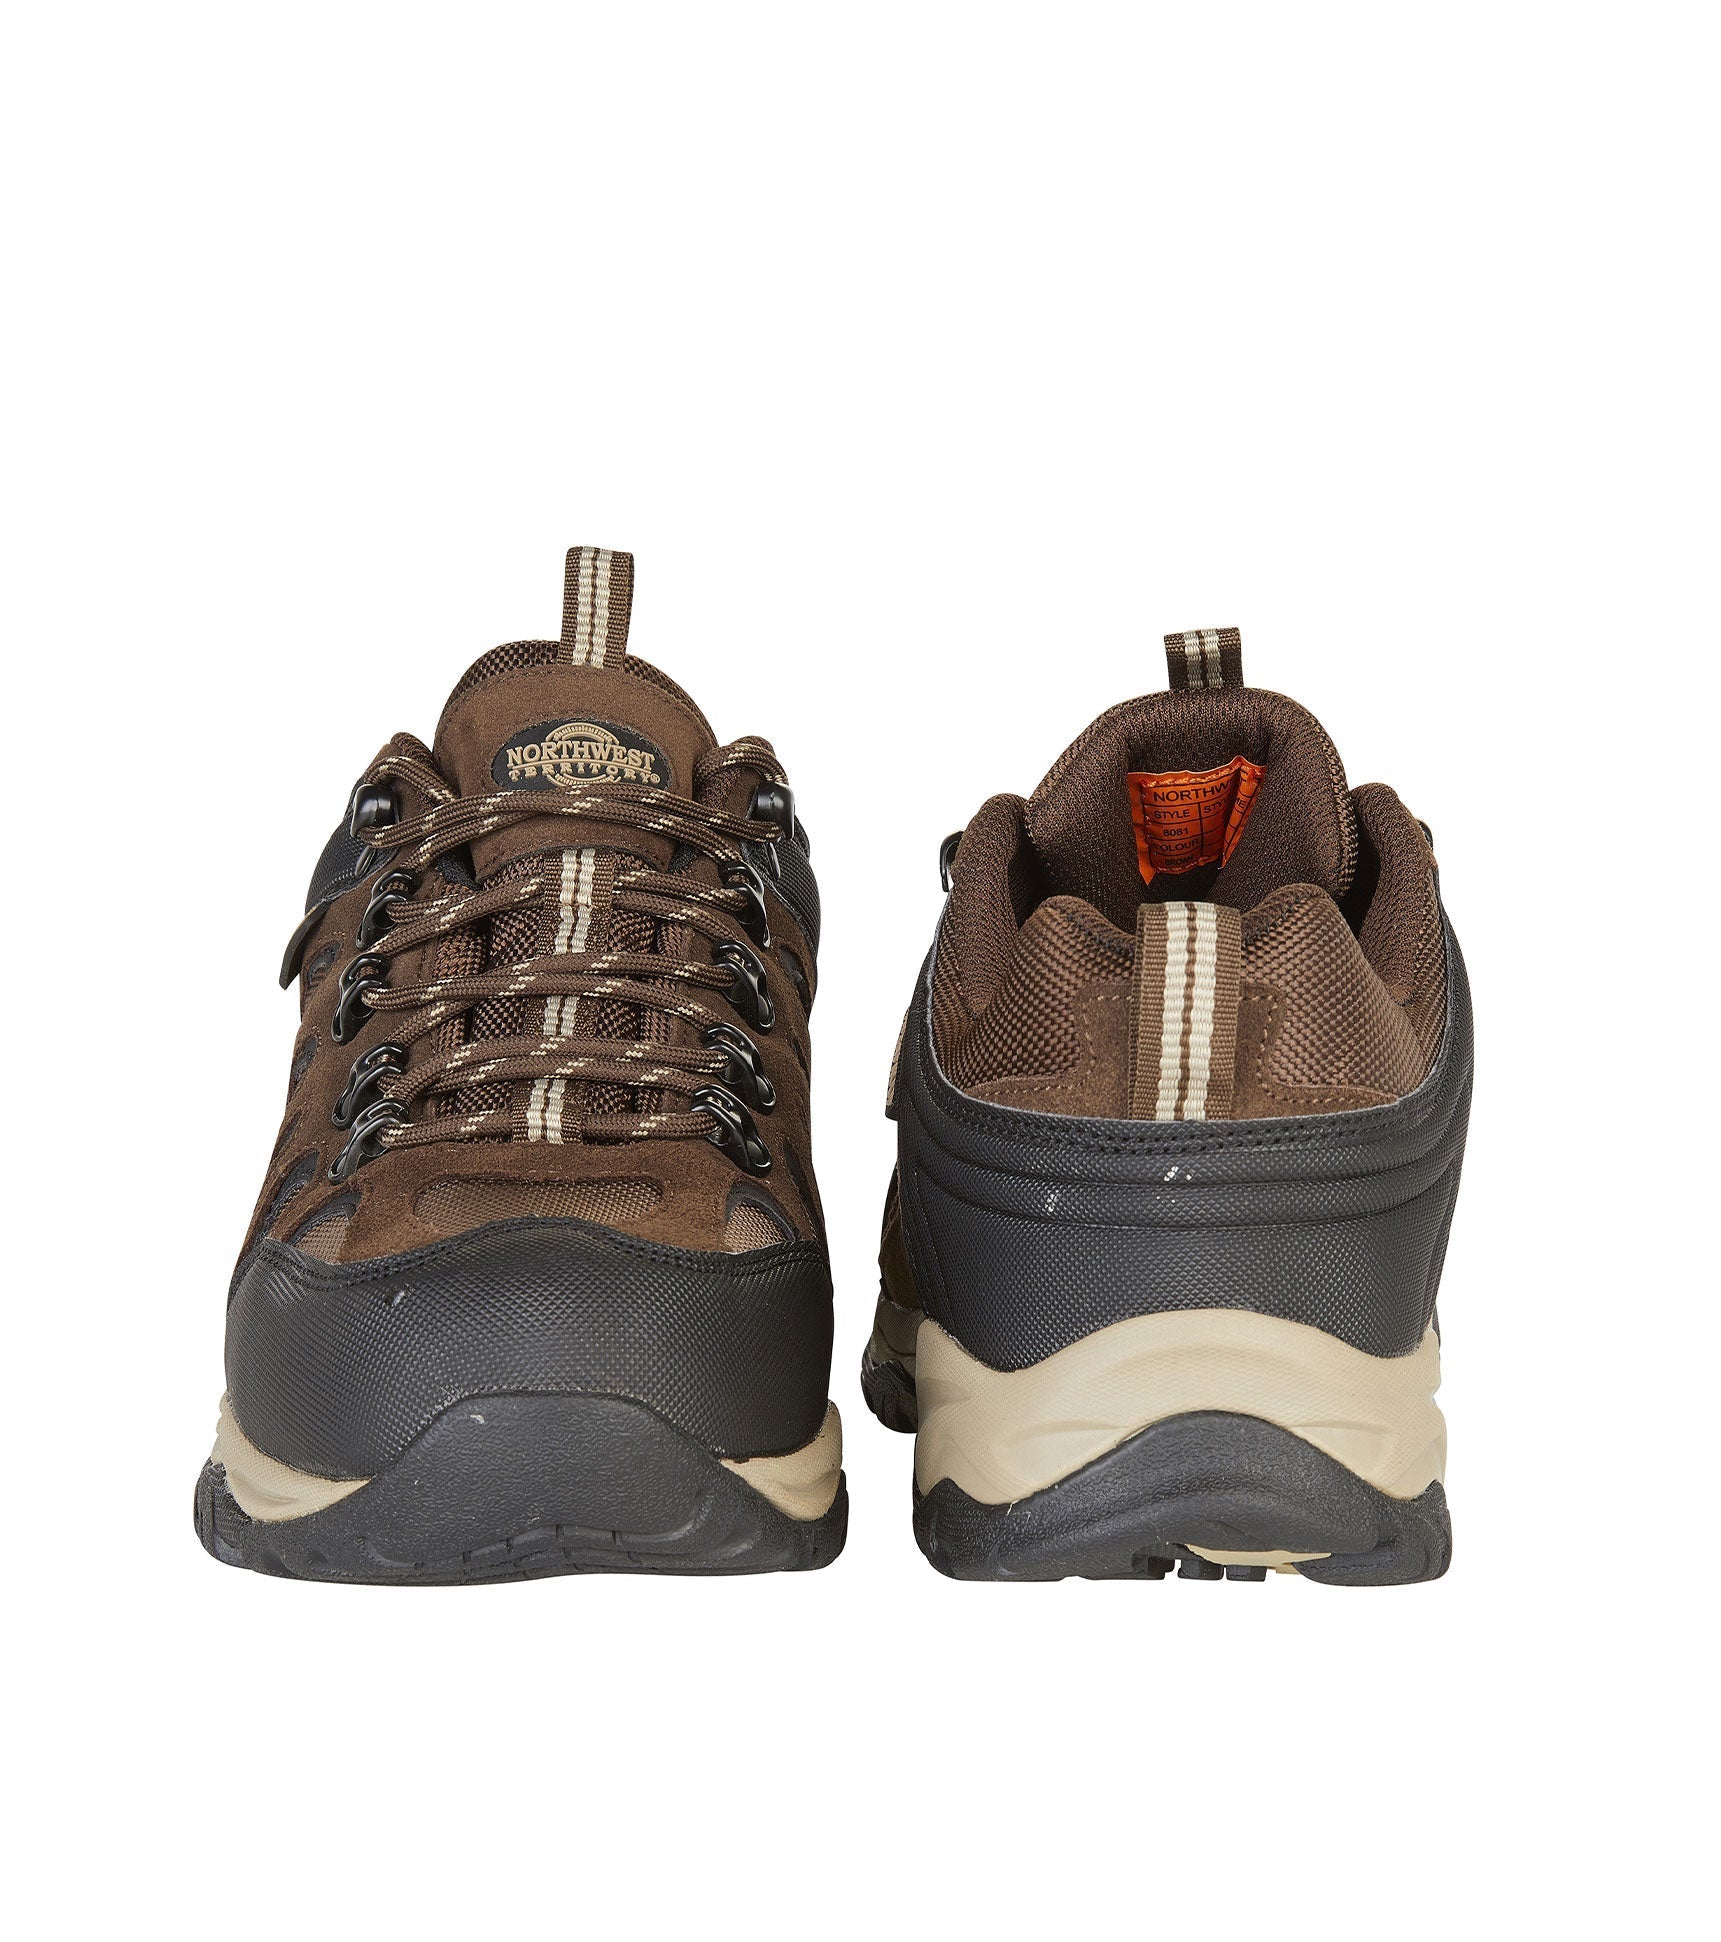 Men's Waterproof Walking Shoes